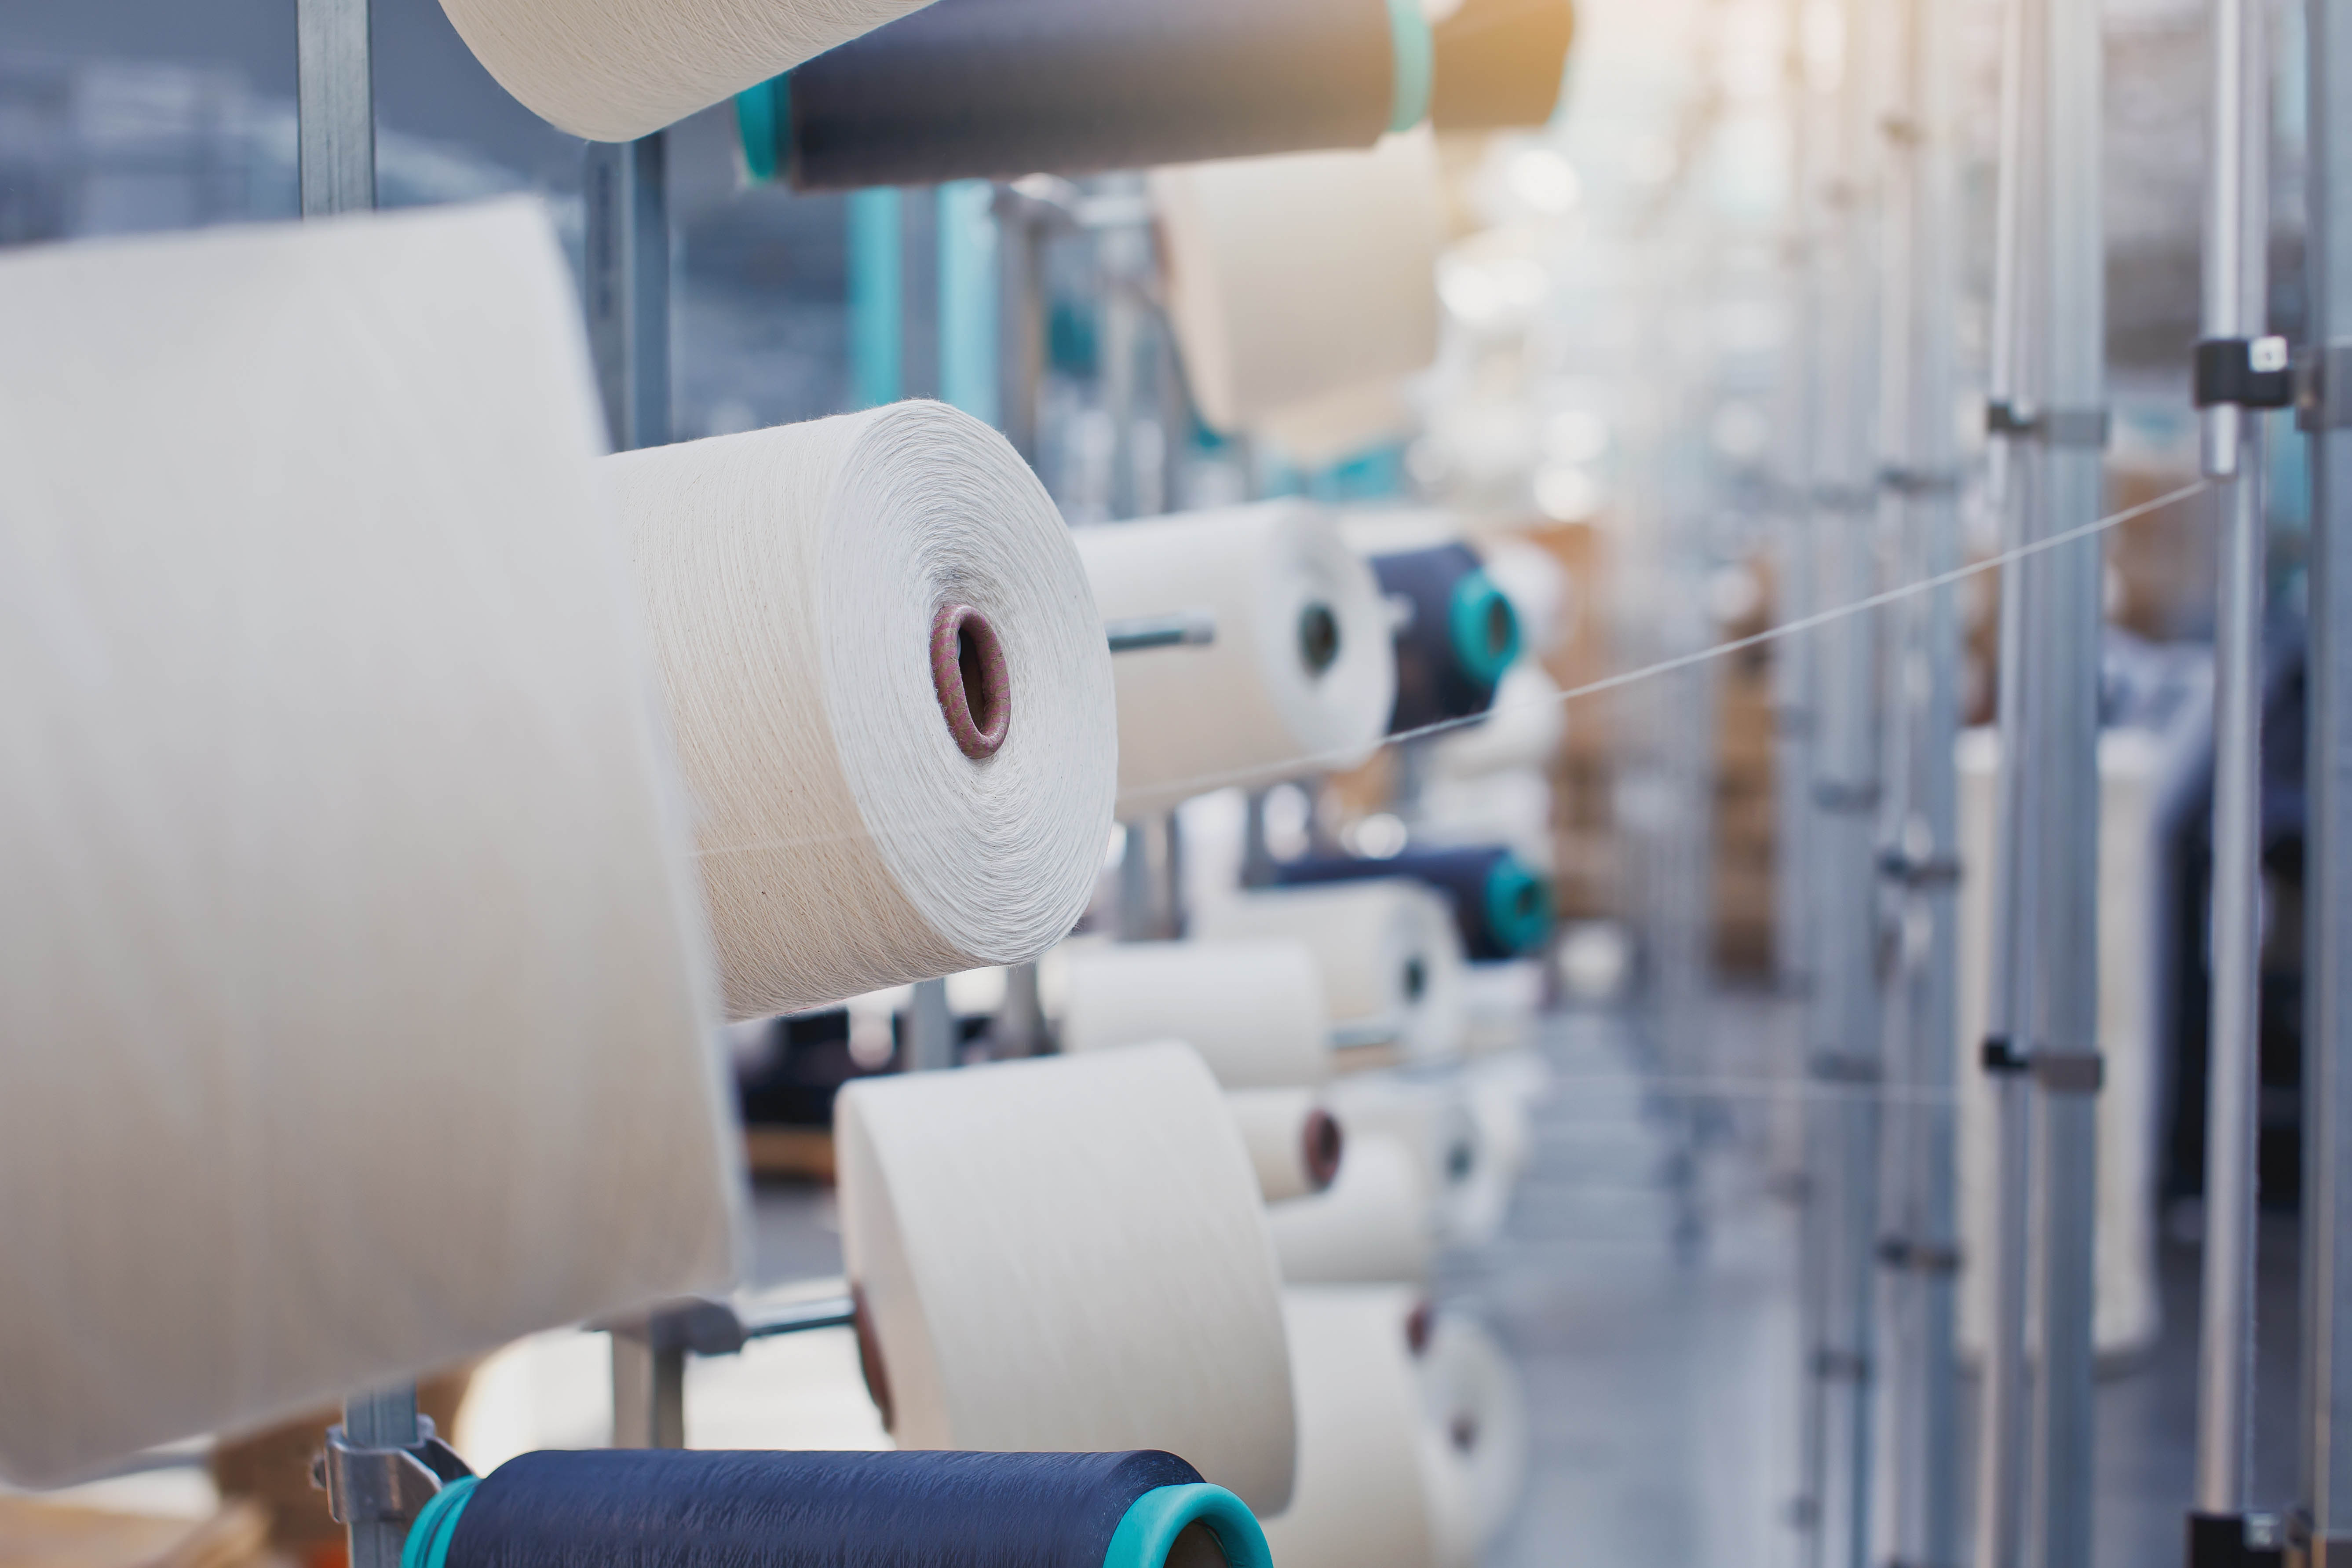 Produkcja Tekstylna.Dzianina okrągła.Fabryka tekstyliów na linii przędzalniczej oraz firma produkująca maszyny i urządzenia obrotowe.Przemysł odzieżowy.Produkcja tkanin tekstylnych.